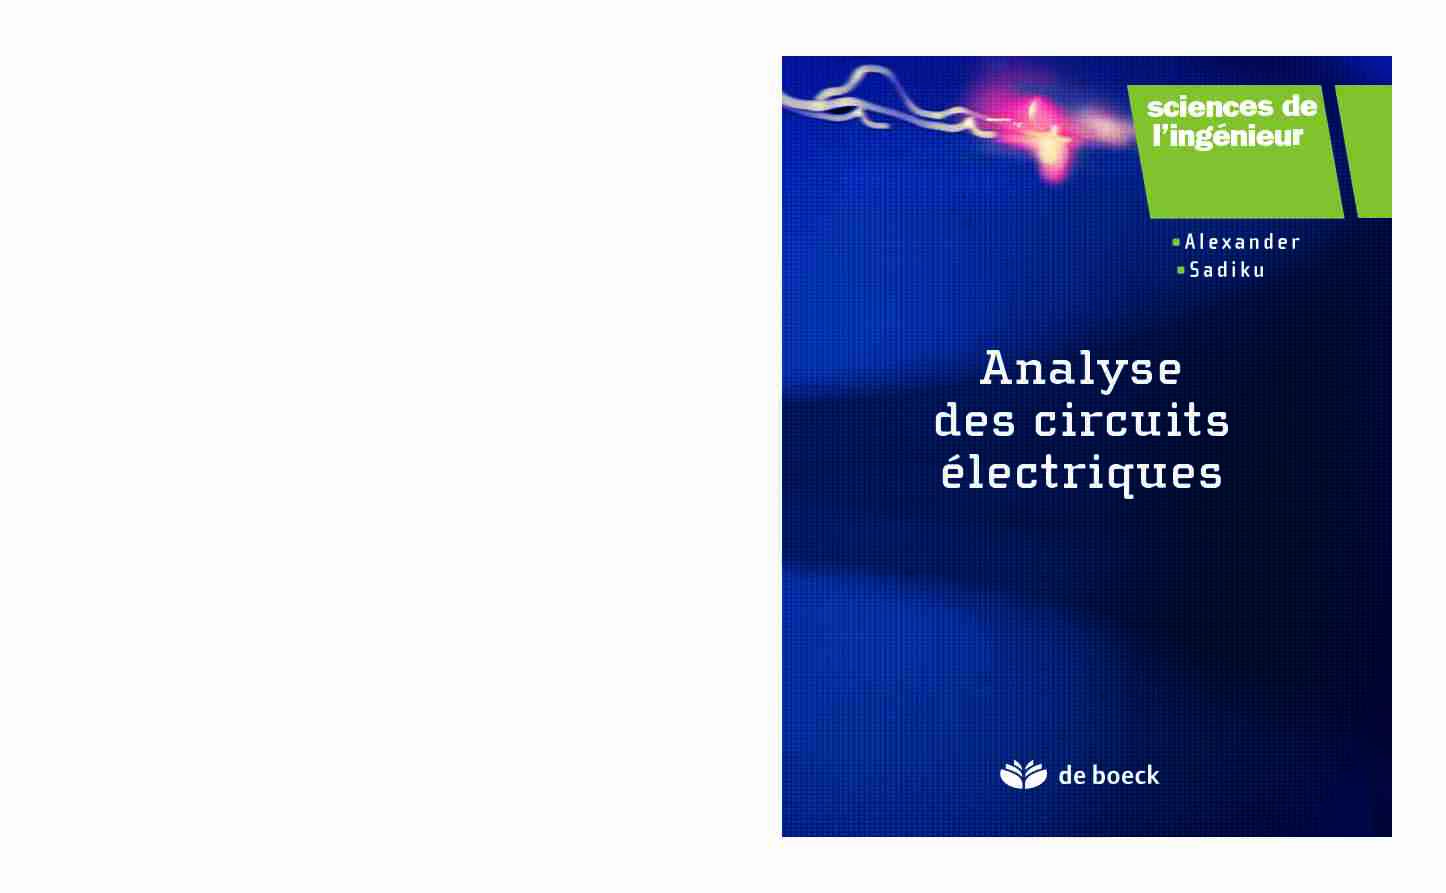 [PDF] Analyse des circuits électriques - Cours tutoriaux et travaux pratiques